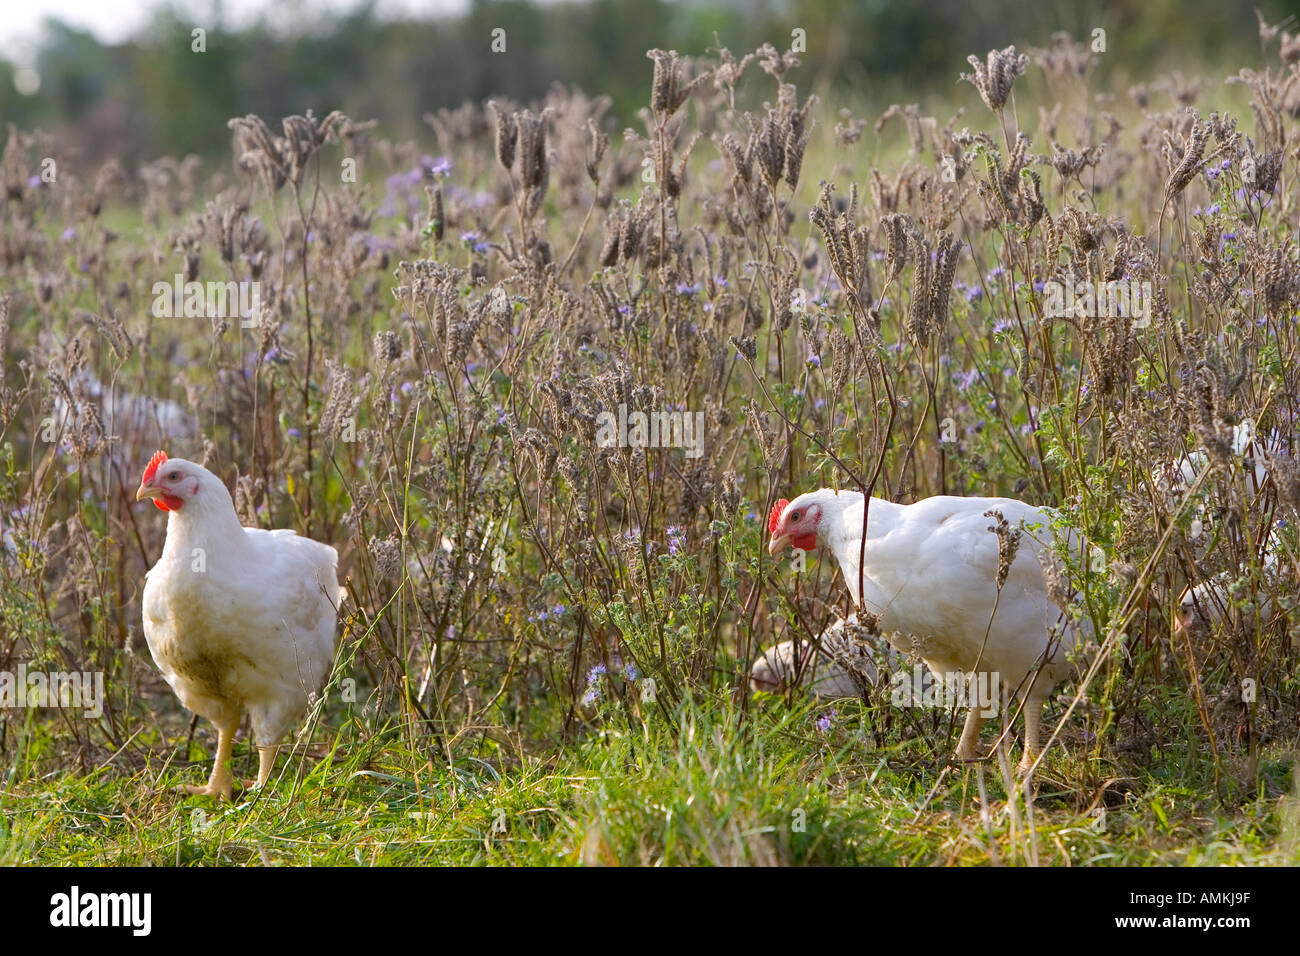 Freilaufenden Hühnern Rasse Isa 257 frei herumlaufen und grasen unter wohltuenden Kräutern am Bio-Bauernhof Sheepdrove England Stockfoto